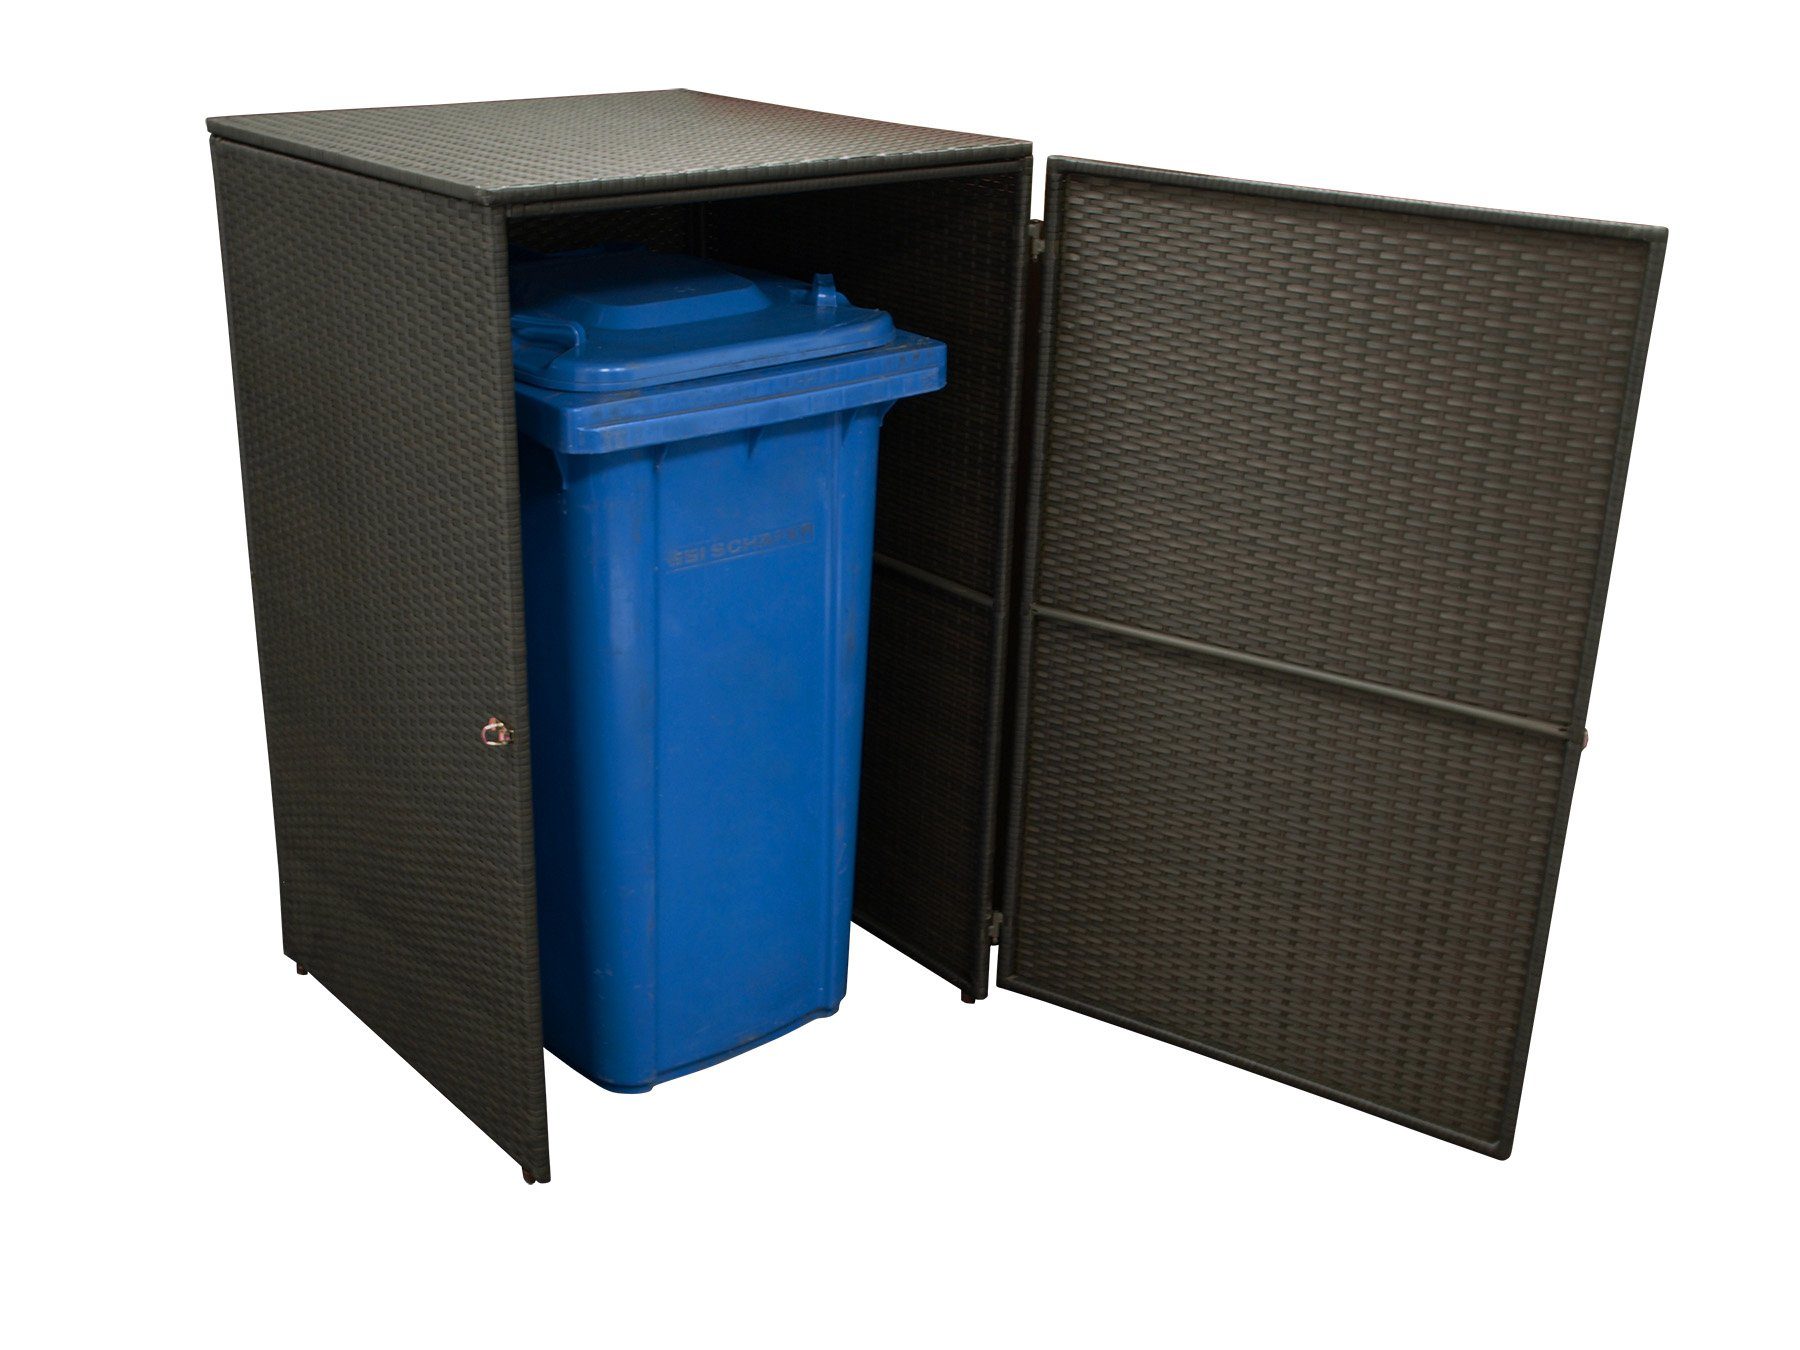 MERXX Mülltonnenbox (1 St), Dekorative Mülltonnenbox, Stahlgestell + wetterfestes Polyrattan moccafarben, Maße: 66x64x109cm